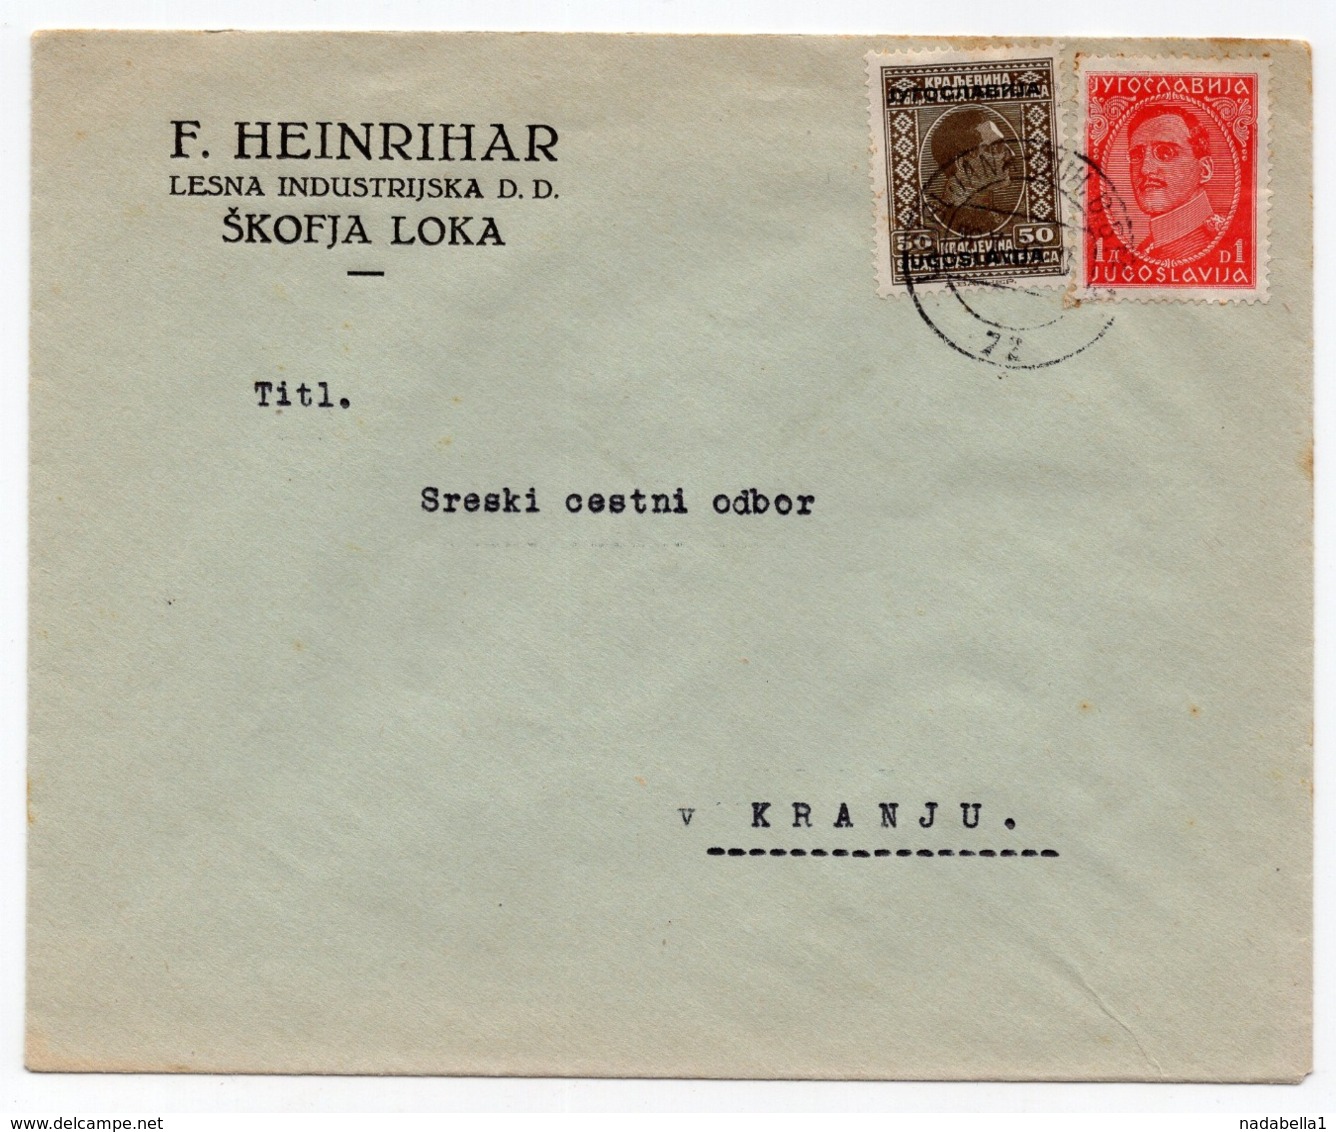 1926 YUGOSLAVIA, SLOVENIA, TPO 72  LJUBLJANA - BOH.BISTRICA, F. HEINRIHAR, ŠKOFJA LOKA, LETTERHEAD COVER - Covers & Documents